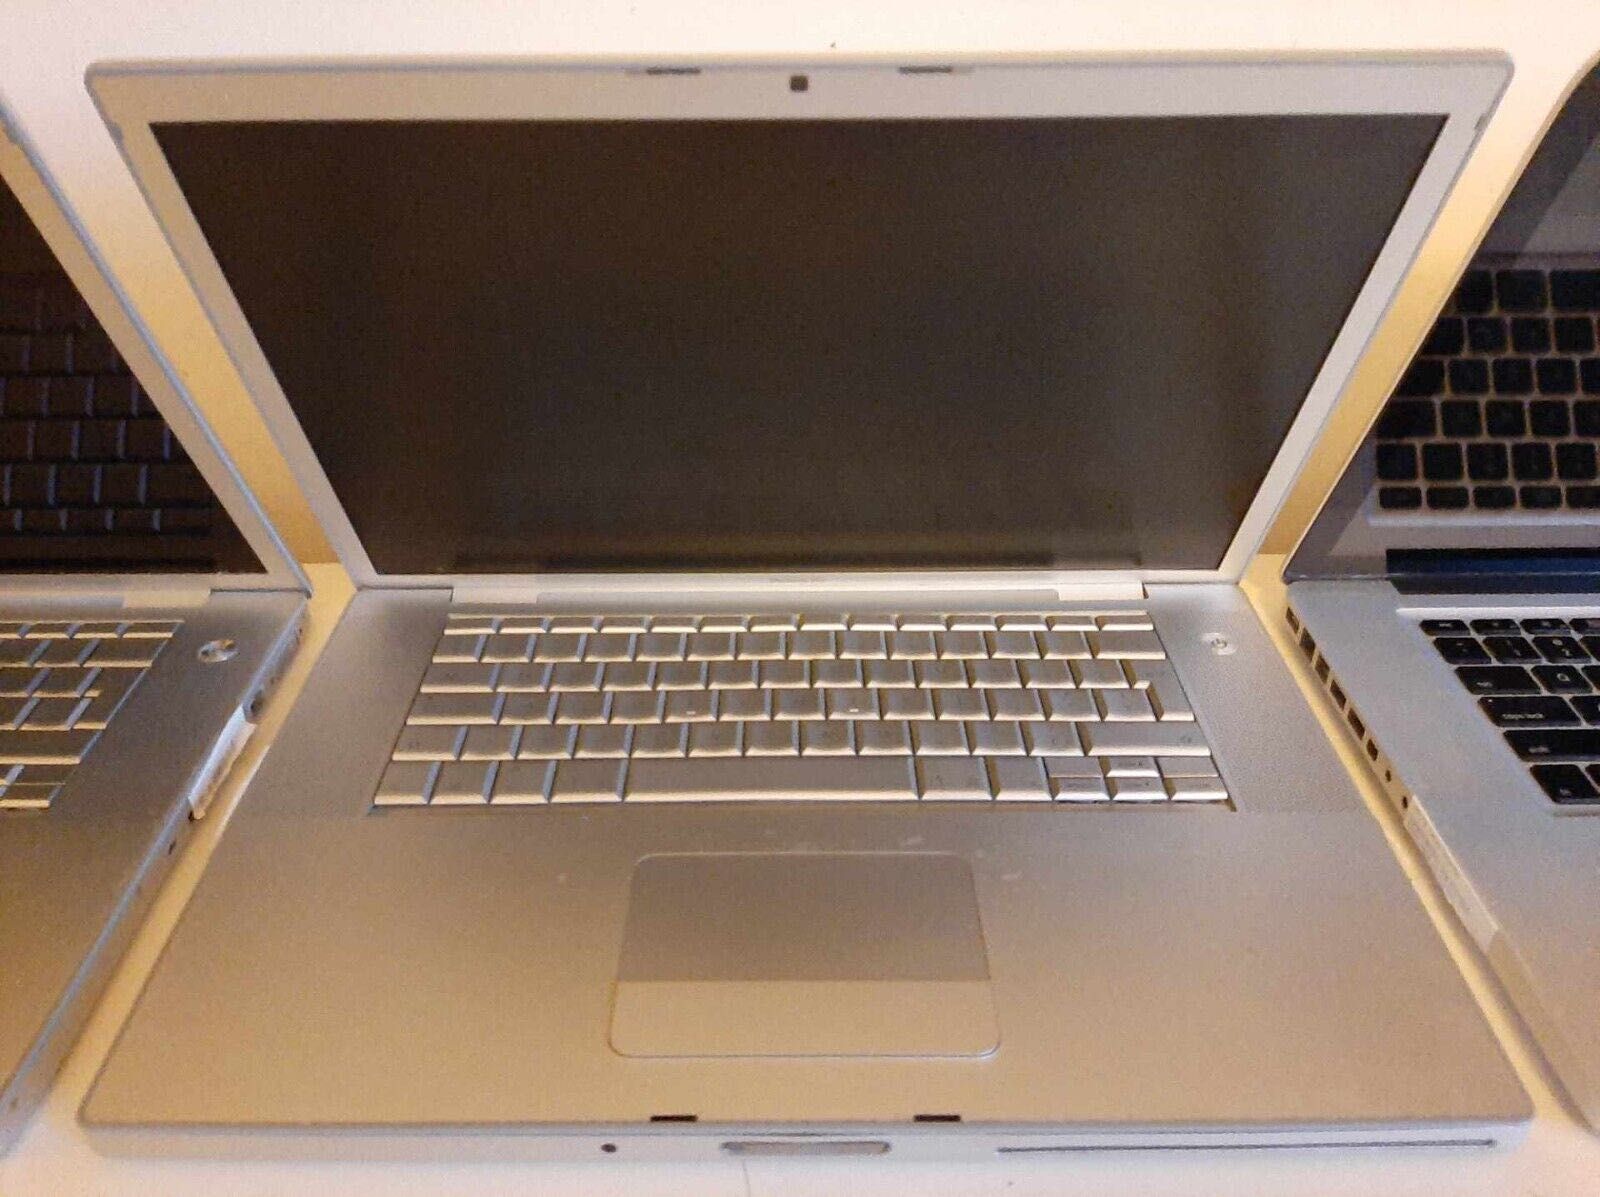 Apple a1286 a1211 Laptop